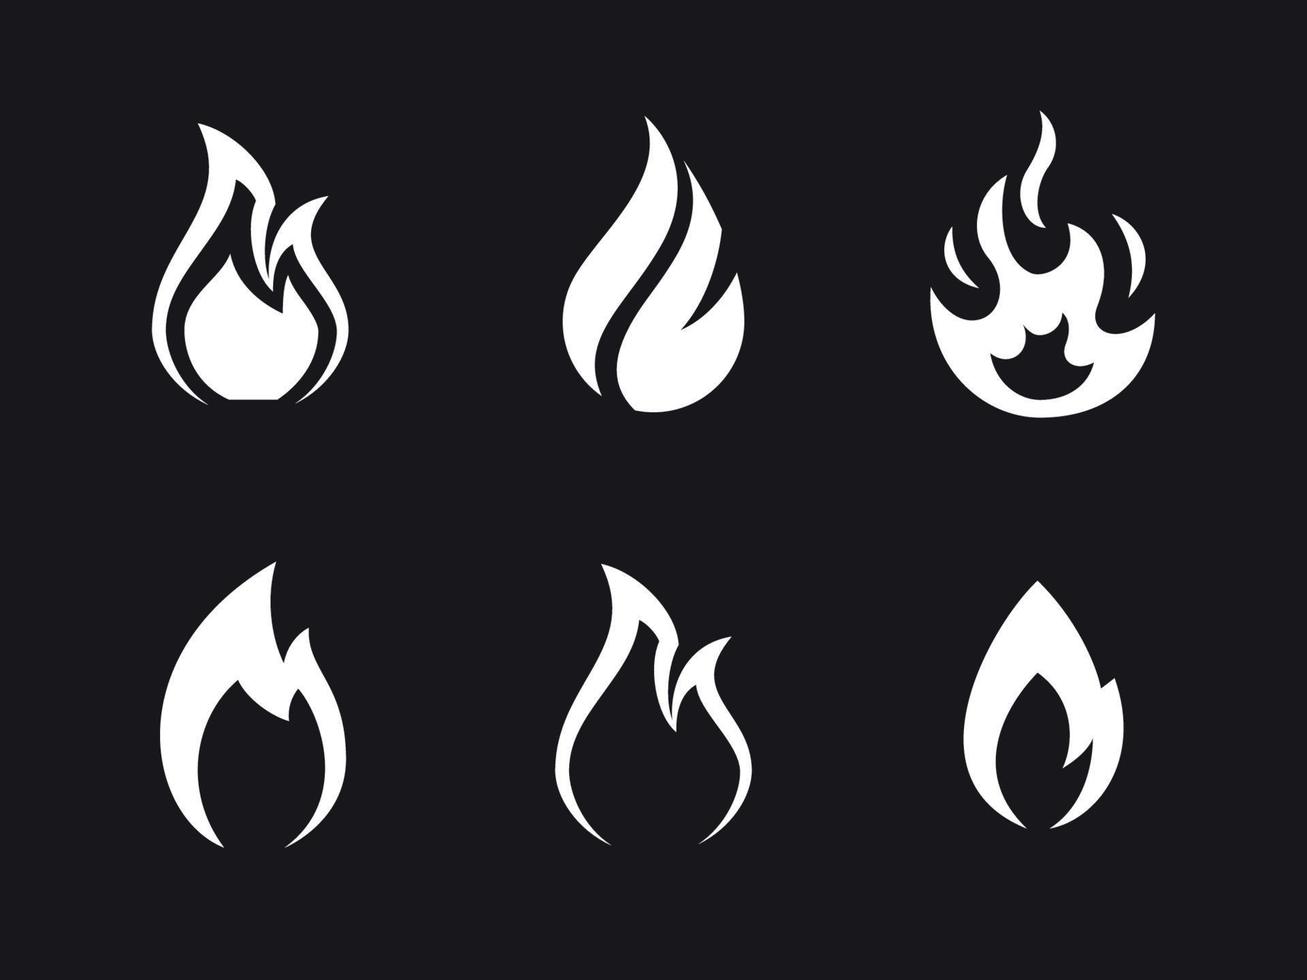 Symbole für Feuerflammen gesetzt. weiß auf schwarzem Grund vektor